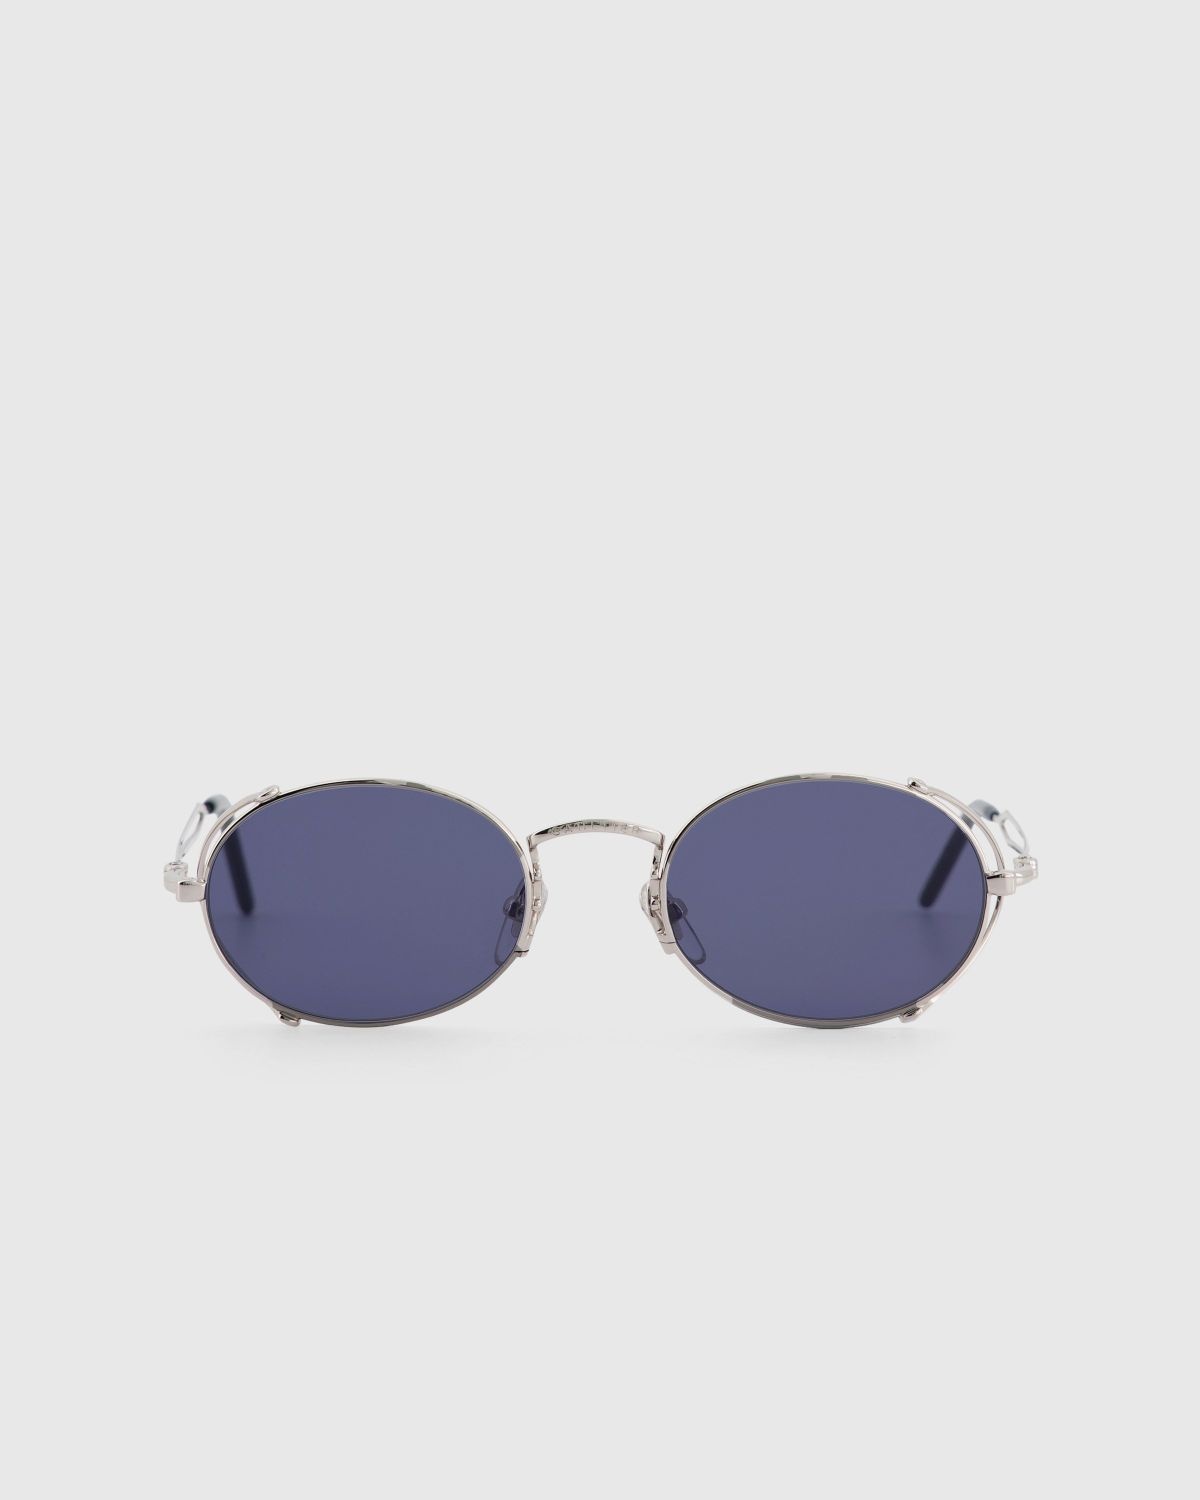 Jean Paul Gaultier x Burna Boy – 55-3175 Arceau Sunglasses Silver - 1